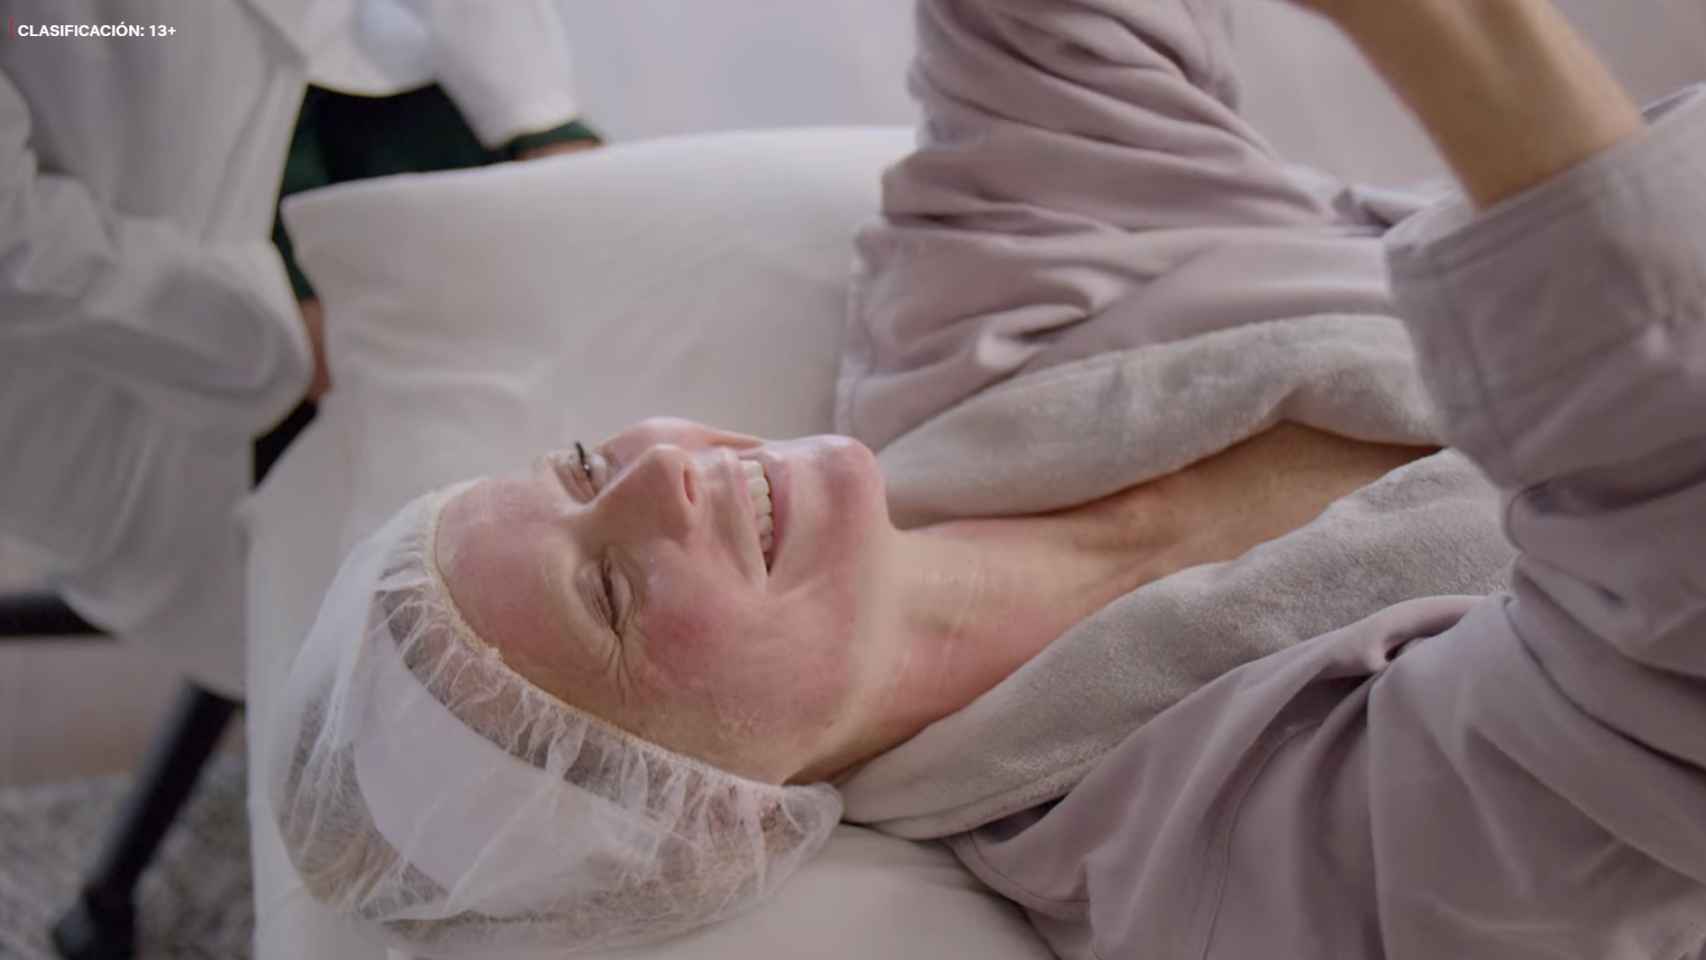 Gwyneth prueba en la serie el tratamiento facial Vampiro.